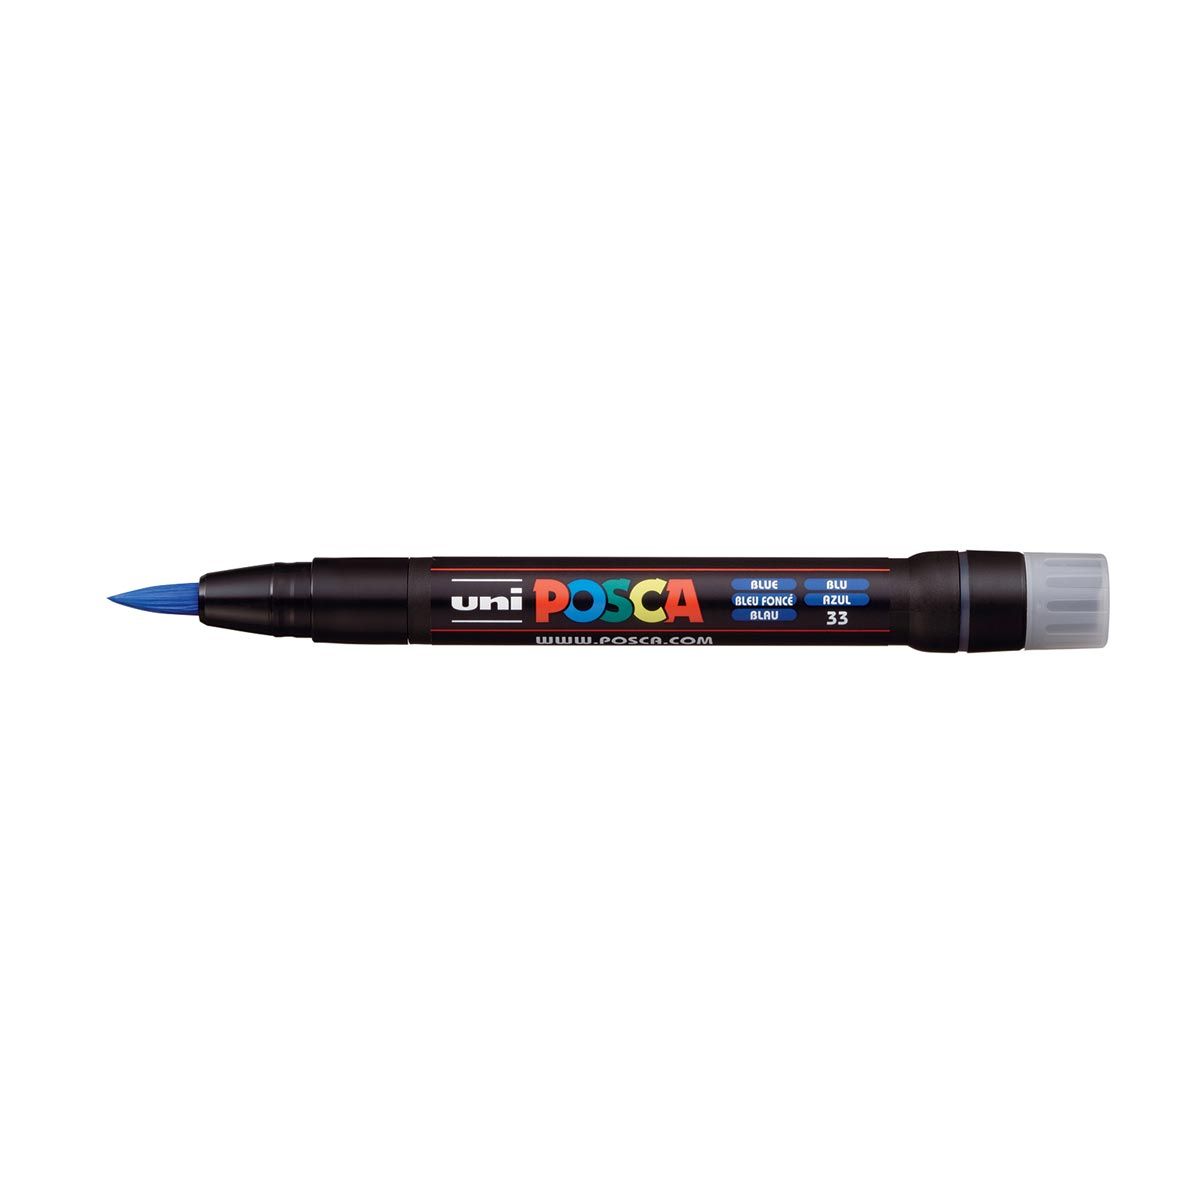 UNI POSCA PCF-350 Brush Tipped Marker Pen – Blue